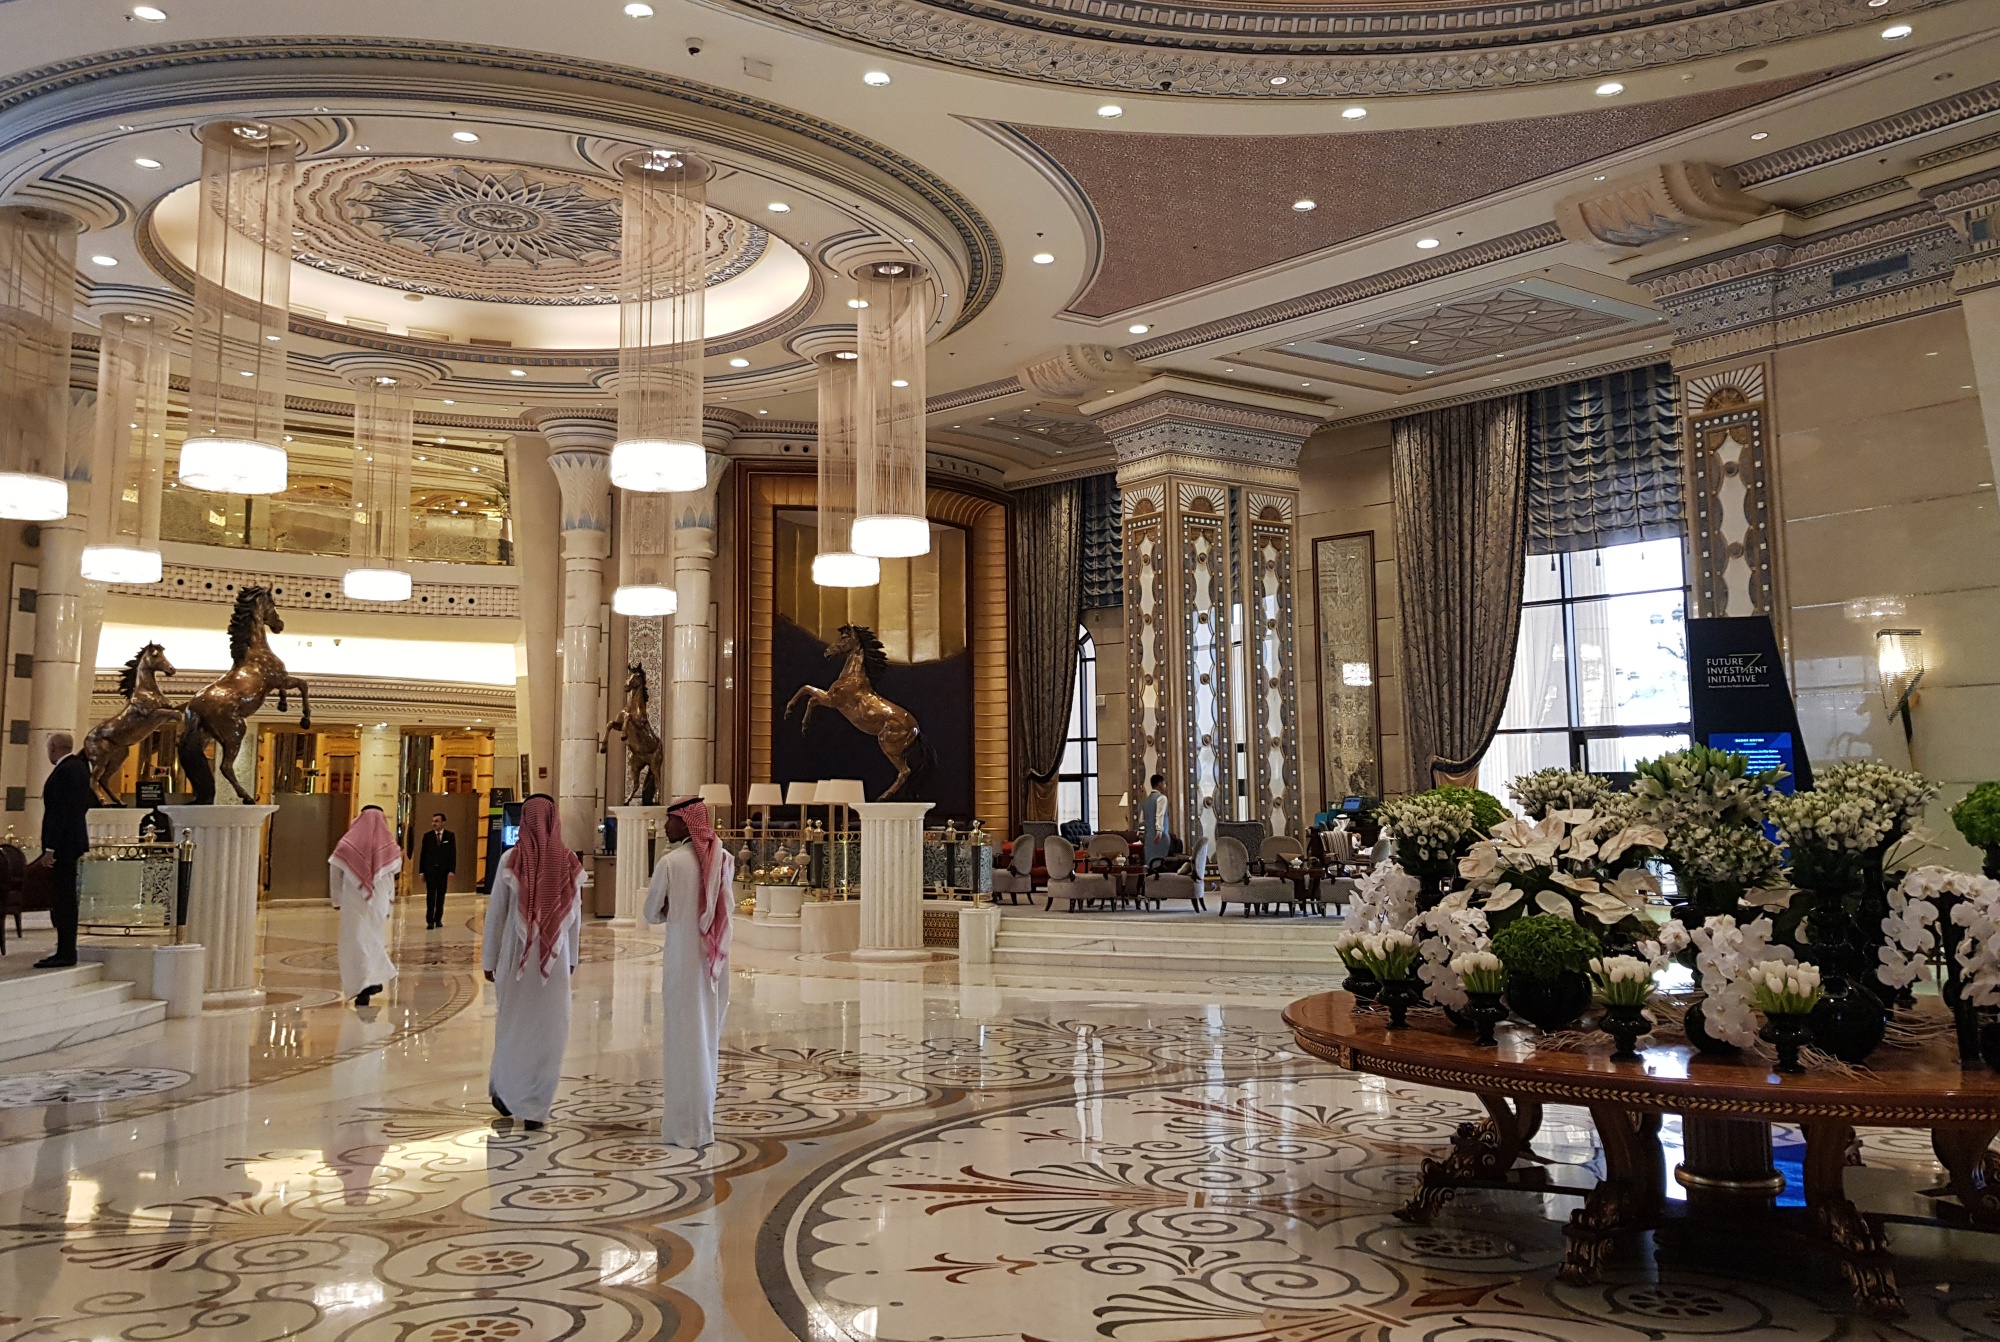 The Ritz Carlton Hotel in Riyadh, Saudi Arabia.